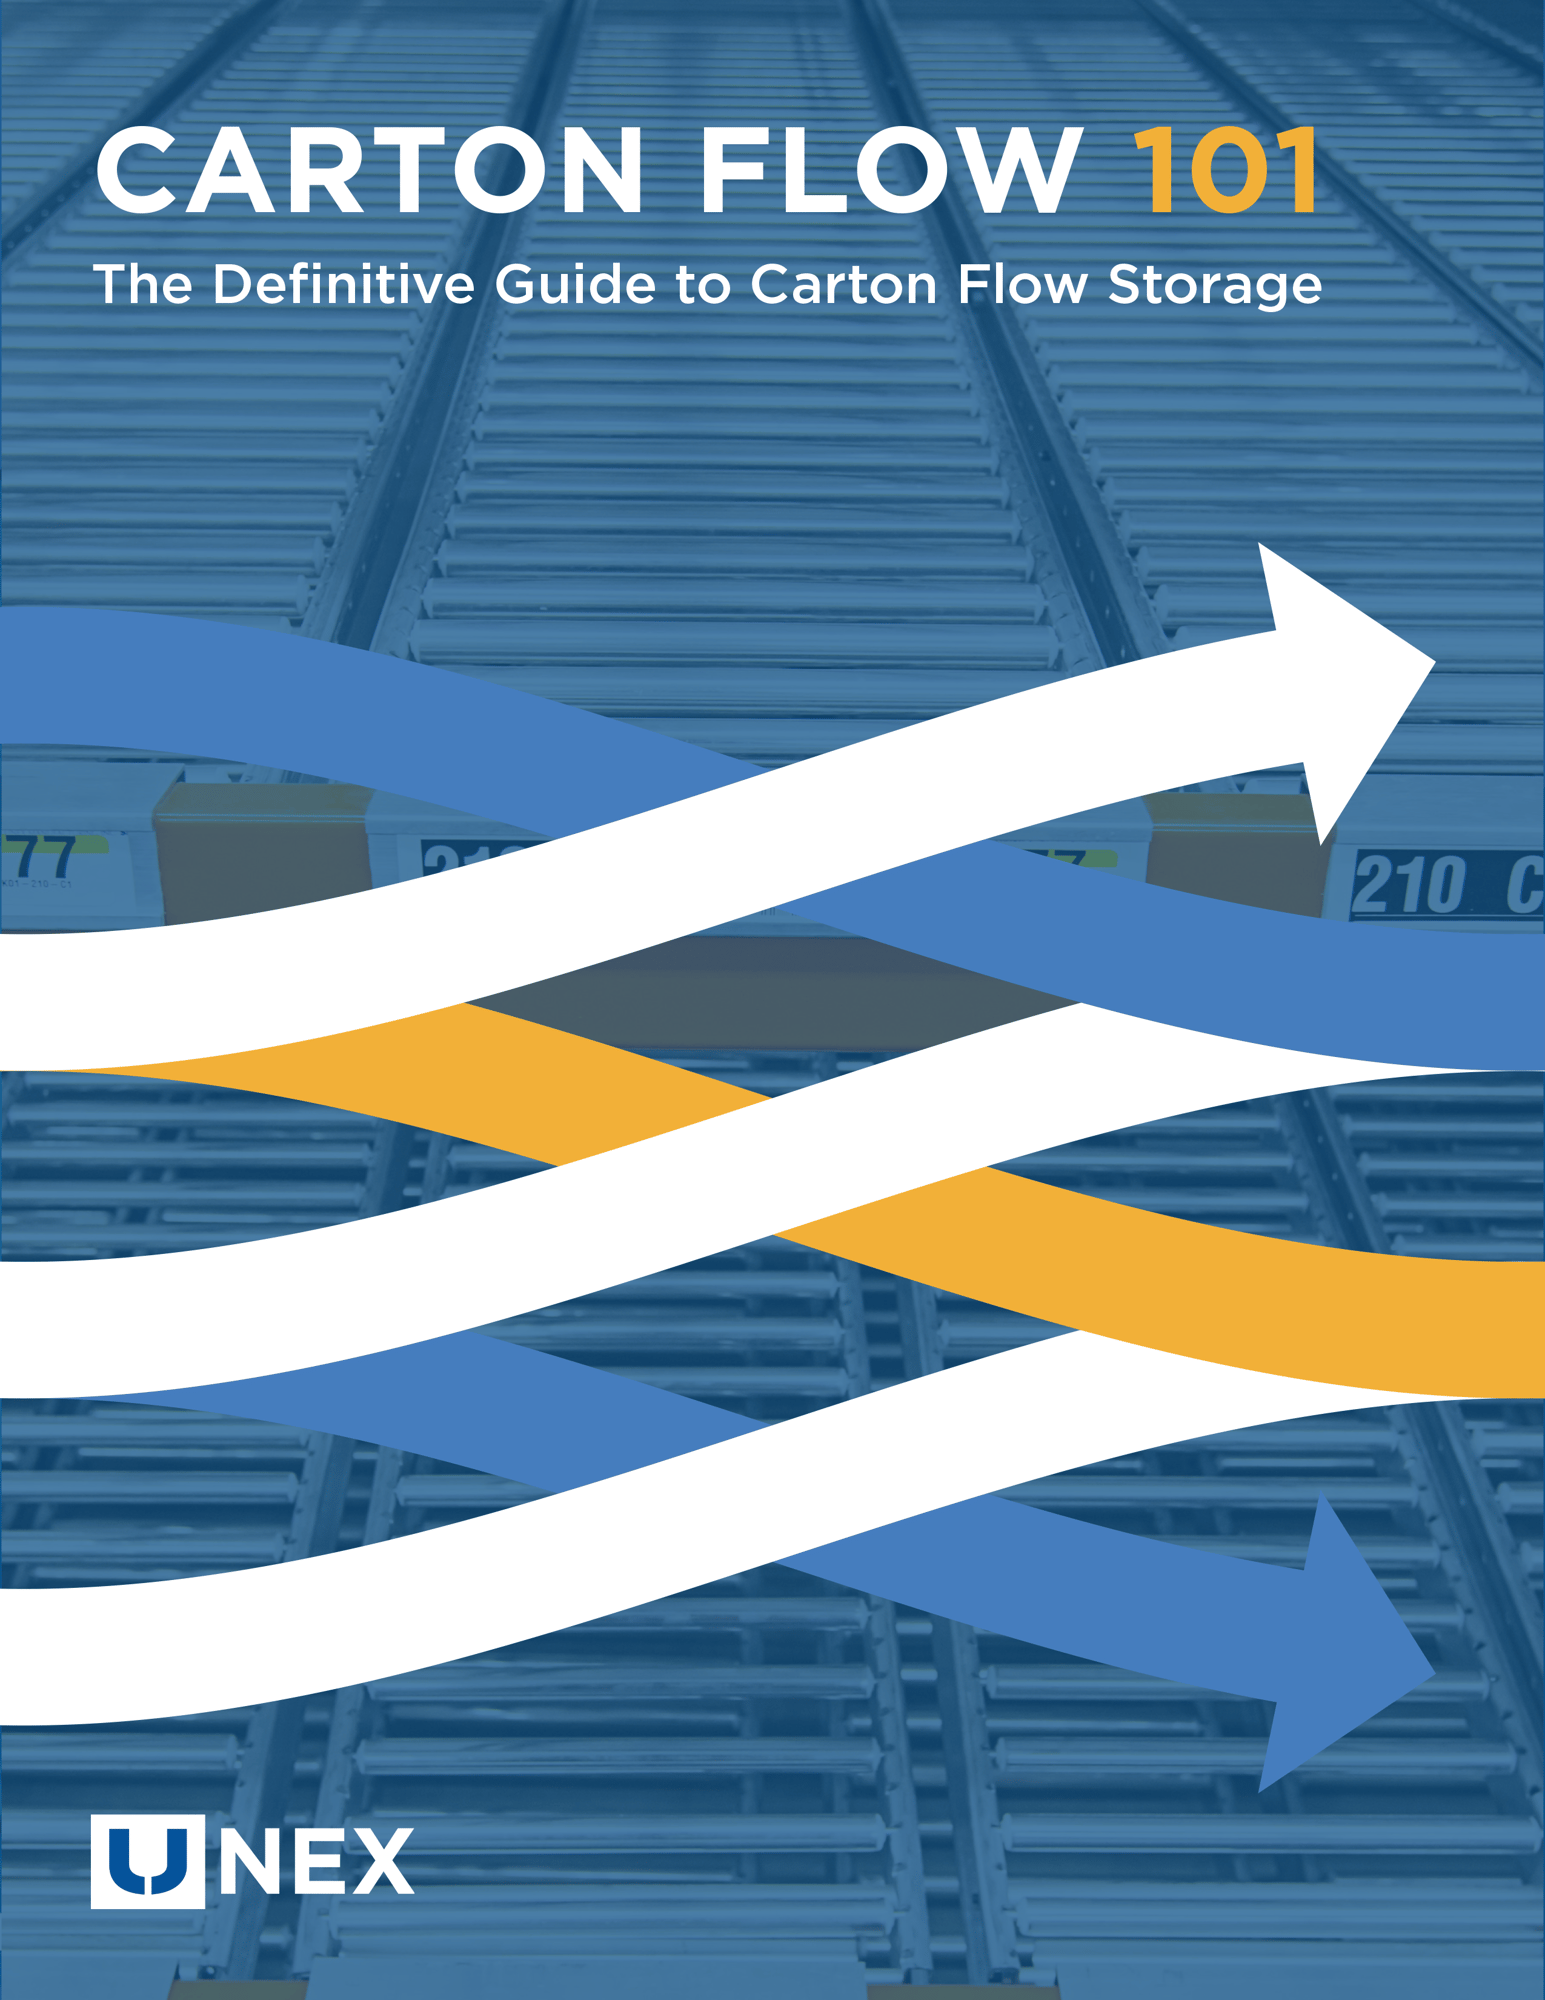 UNEX-Carton-Flow-101-Guide-Cover-1